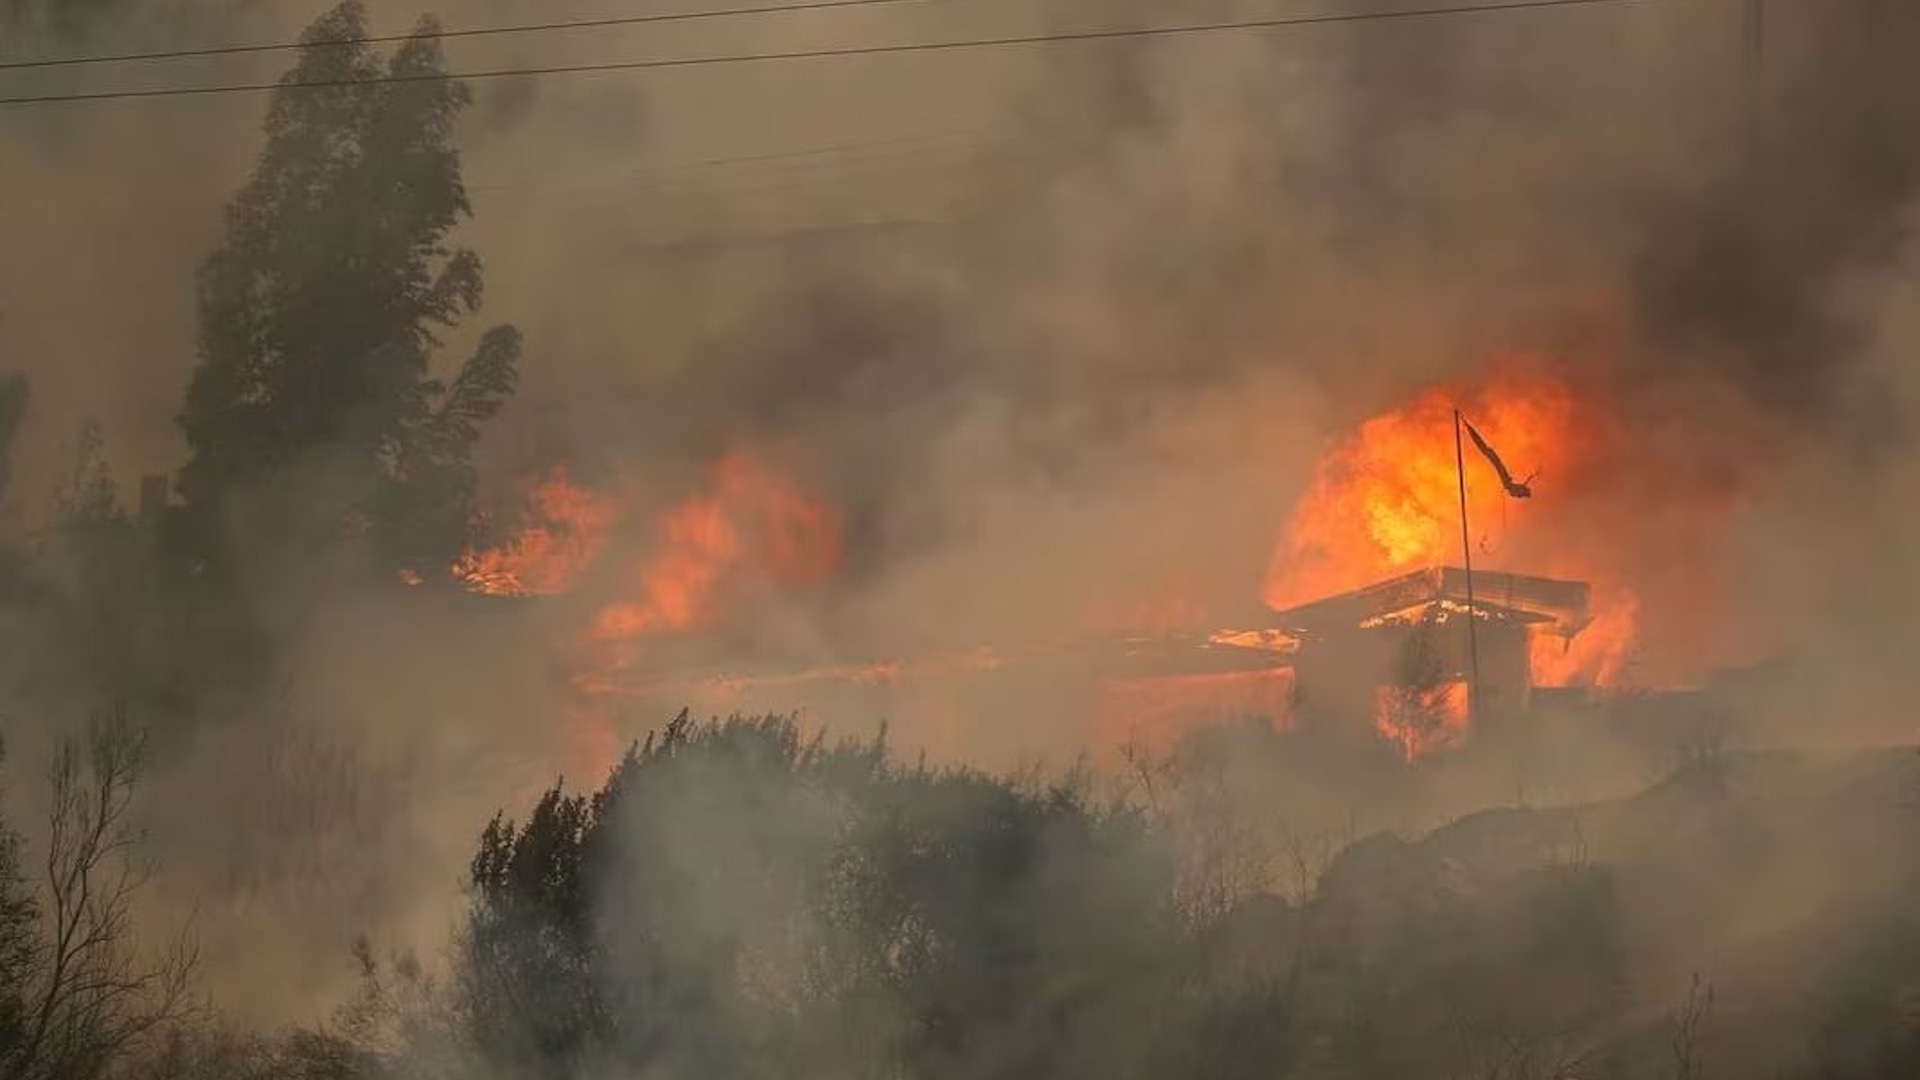 चिलीच्या जंगलात लागलेल्या आगीत ६४ जणांचा मृत्यू झाला आहे, शहरी भागाला धोका आहे